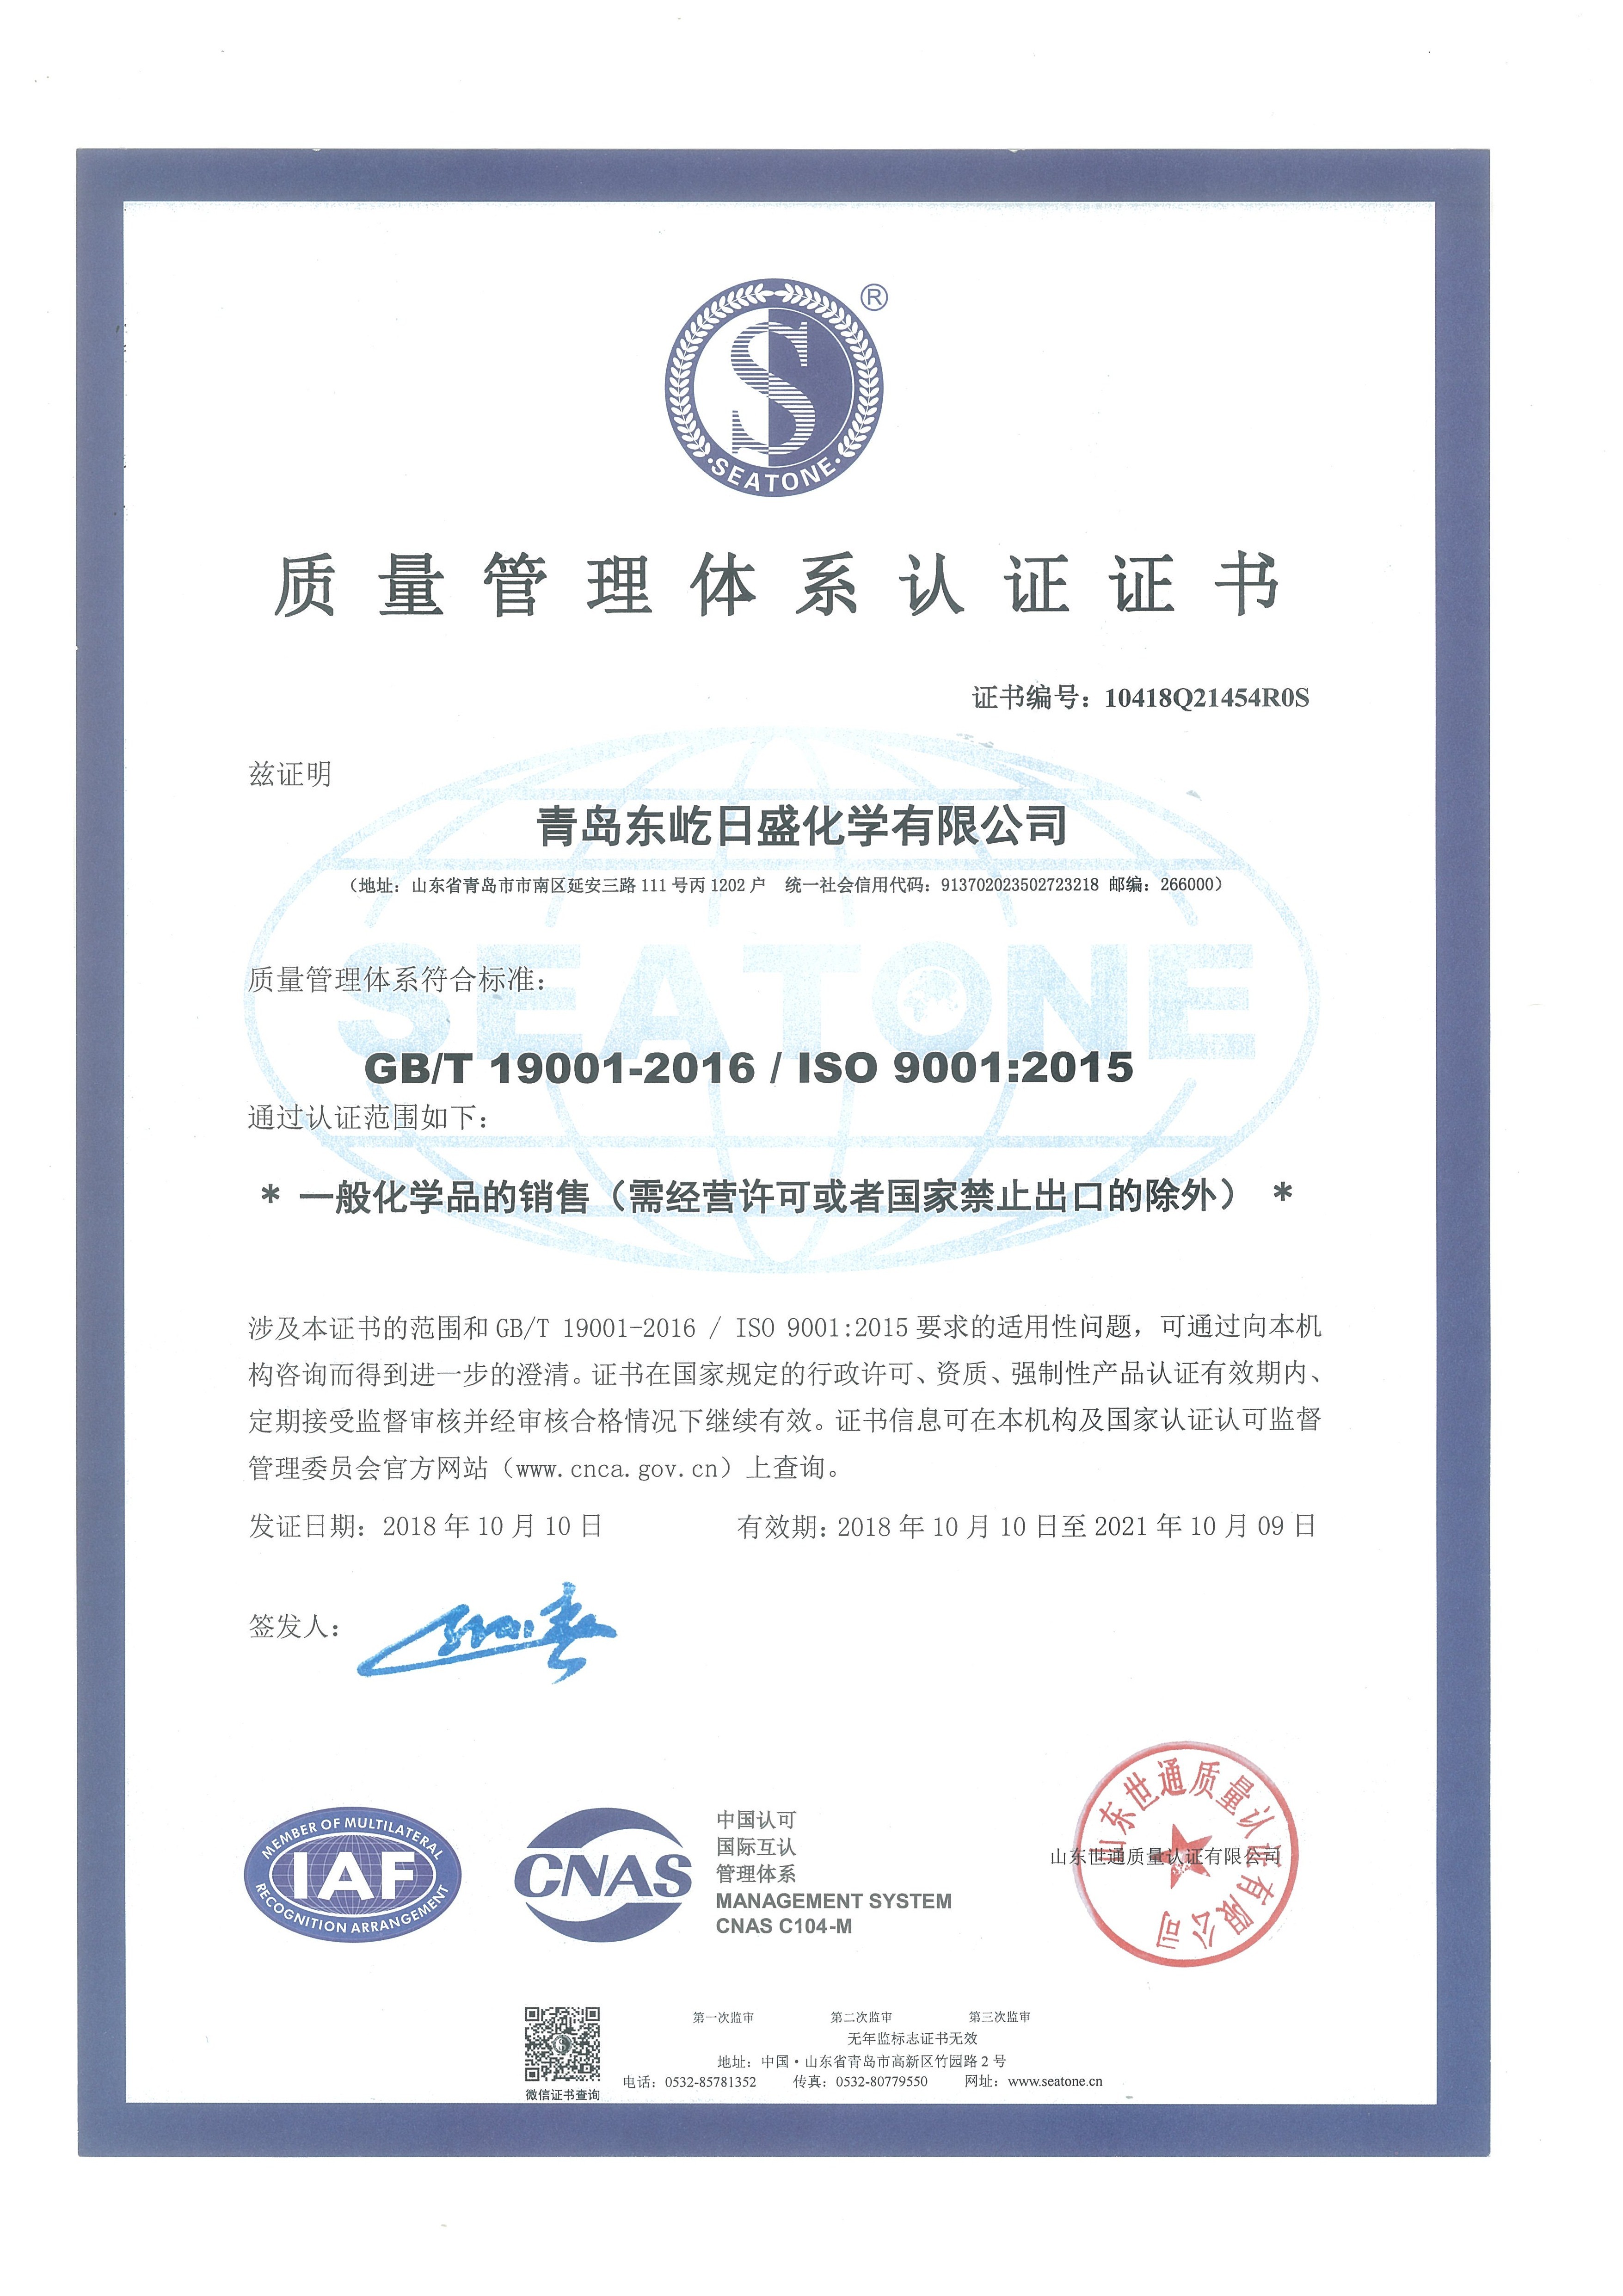 चीन QINGDAO DOEAST CHEMICAL CO., LTD. प्रमाणपत्र